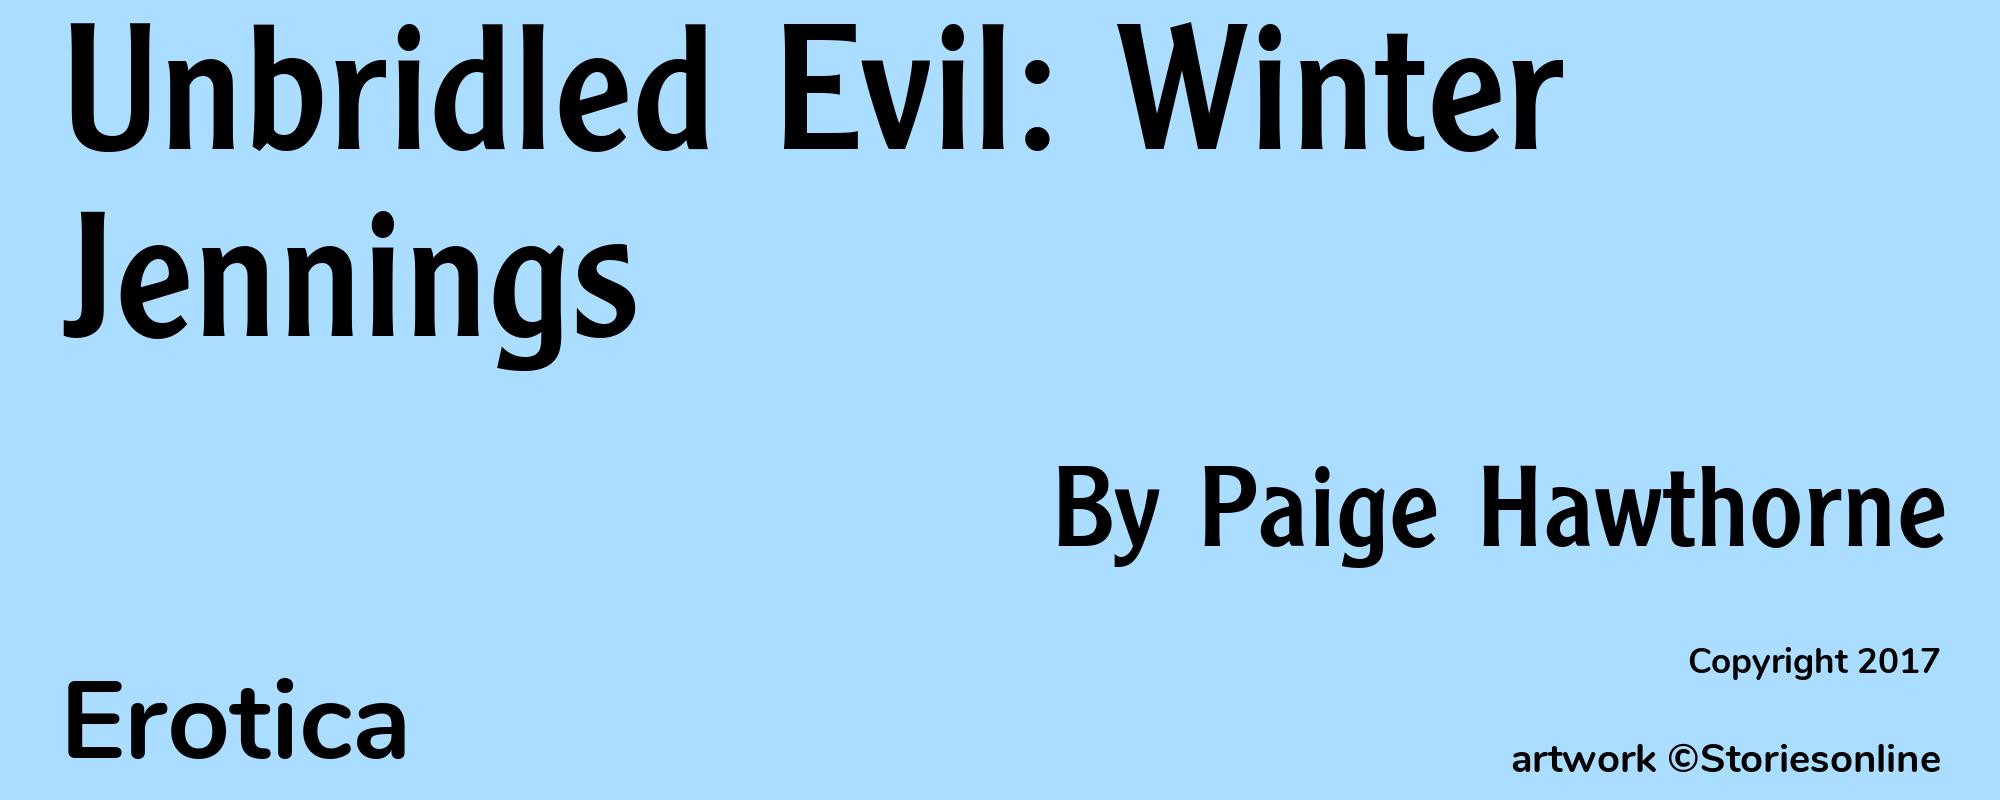 Unbridled Evil: Winter Jennings - Cover